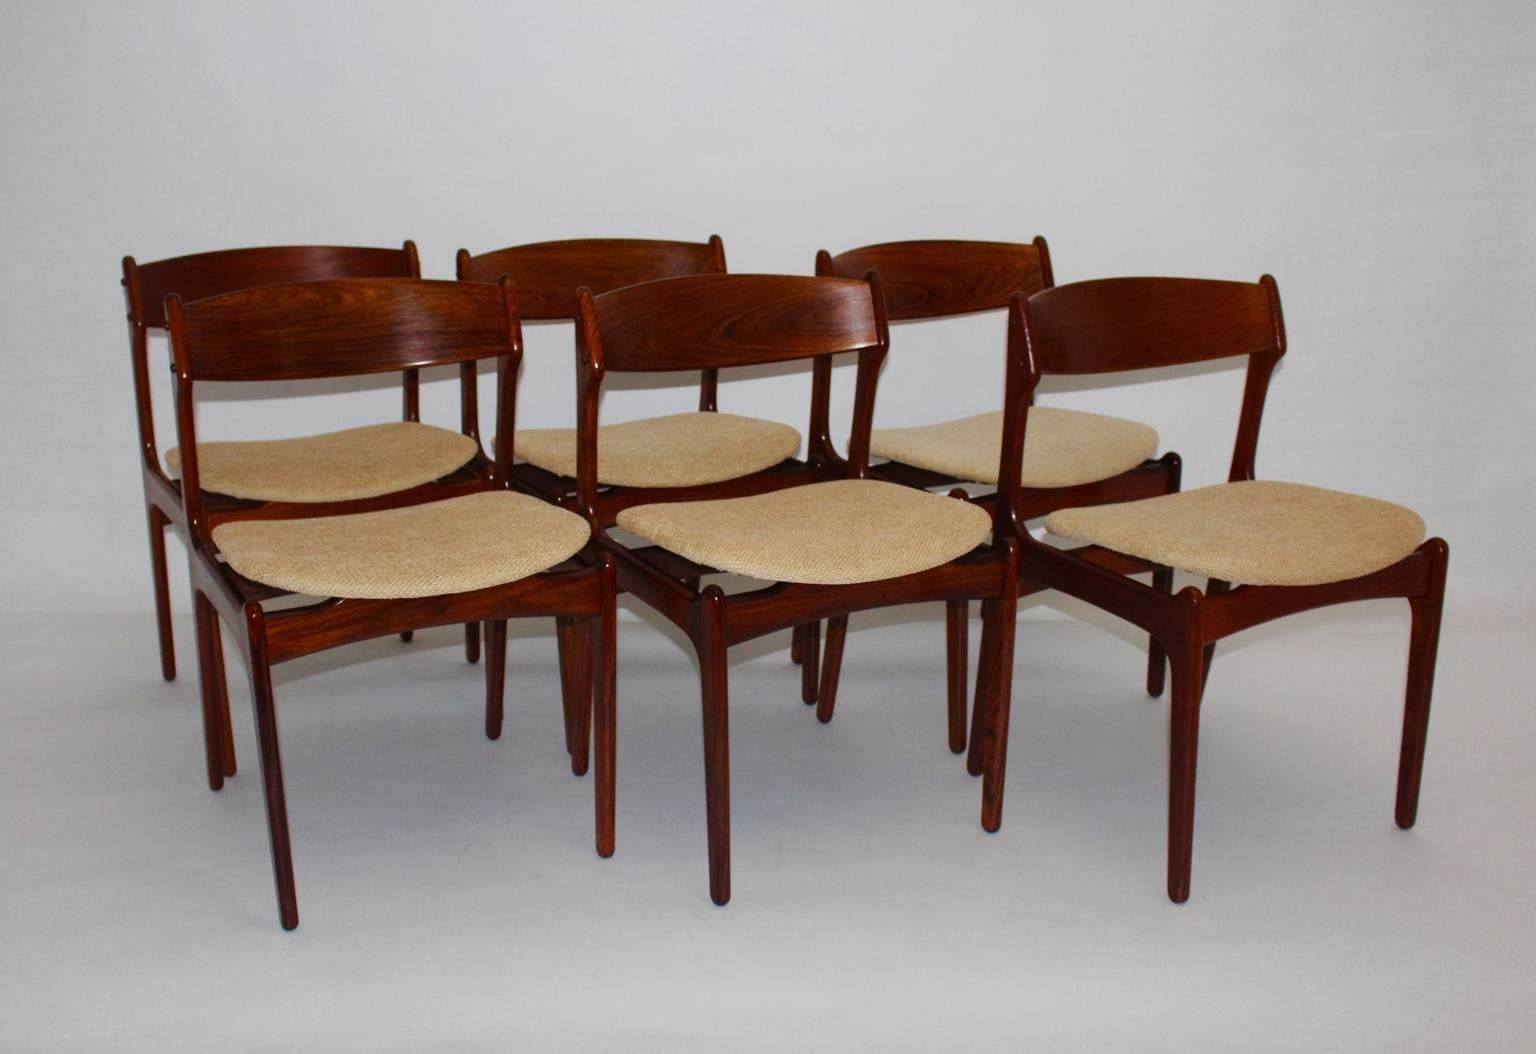 Sechs skandinavische moderne Vintage-Esszimmerstühle aus Teakholz Erik Buck, 1967, Dänemark (20. Jahrhundert)